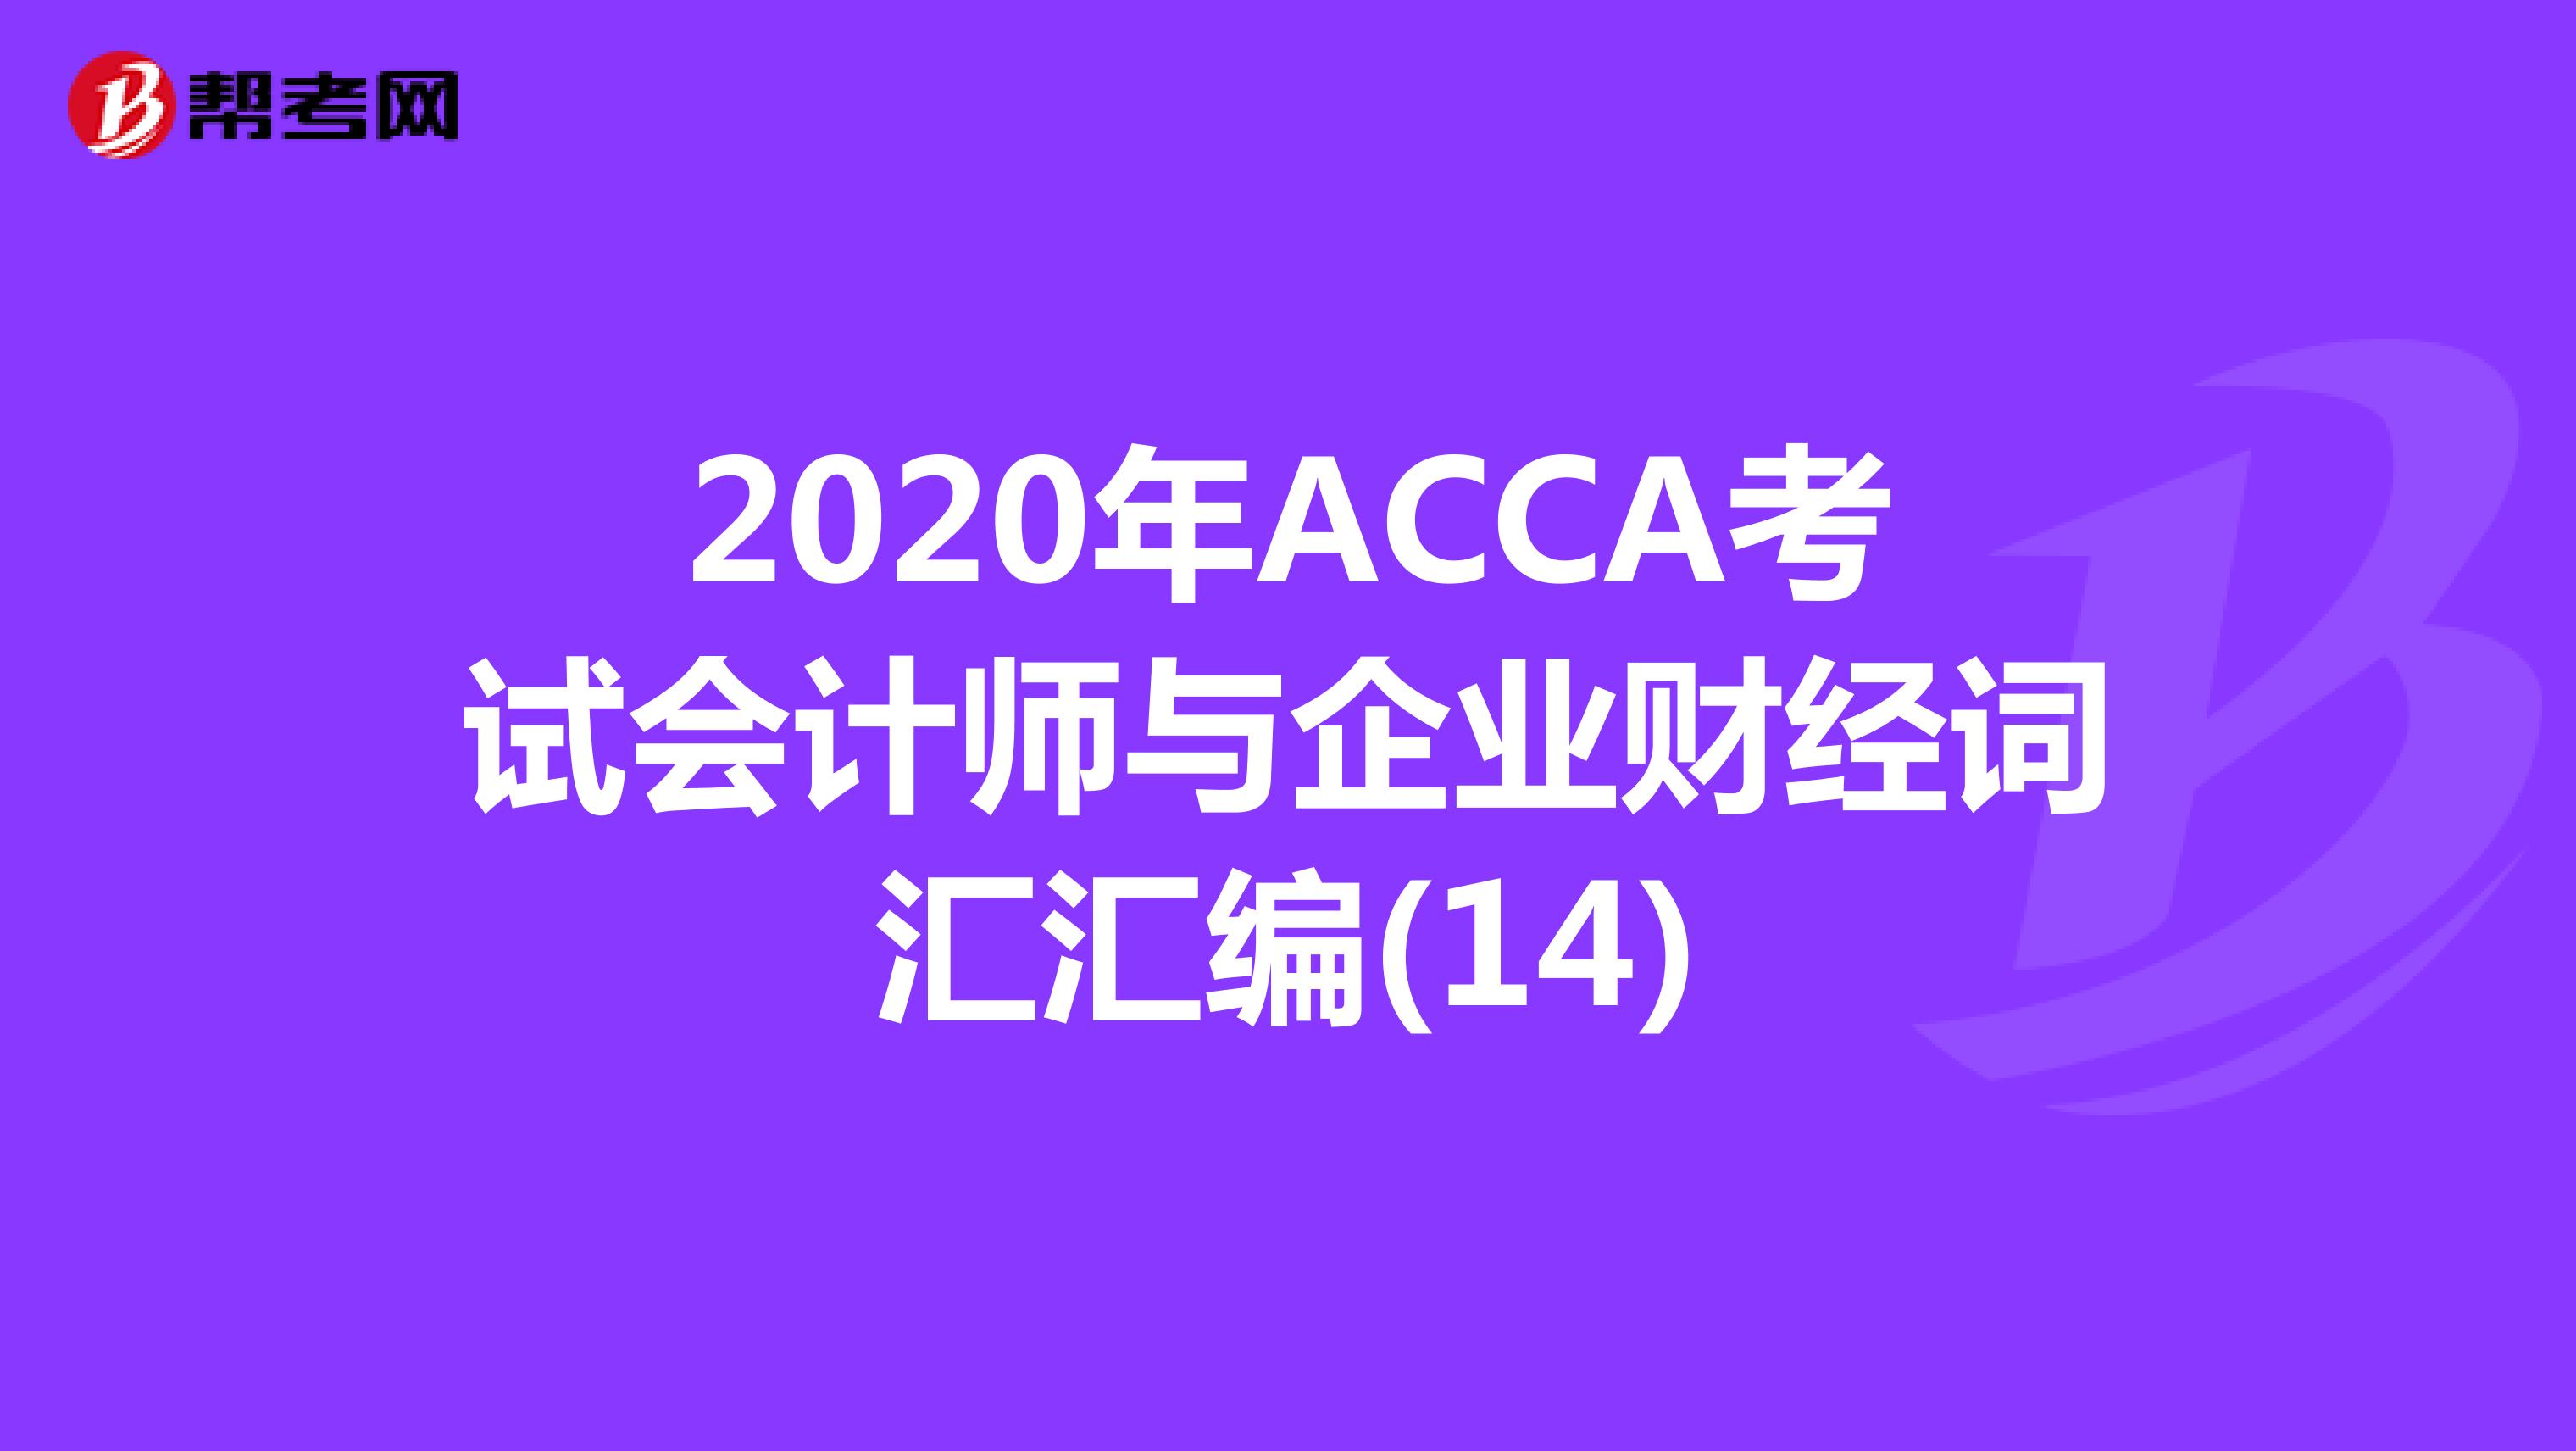 2020年ACCA考试会计师与企业财经词汇汇编(14)